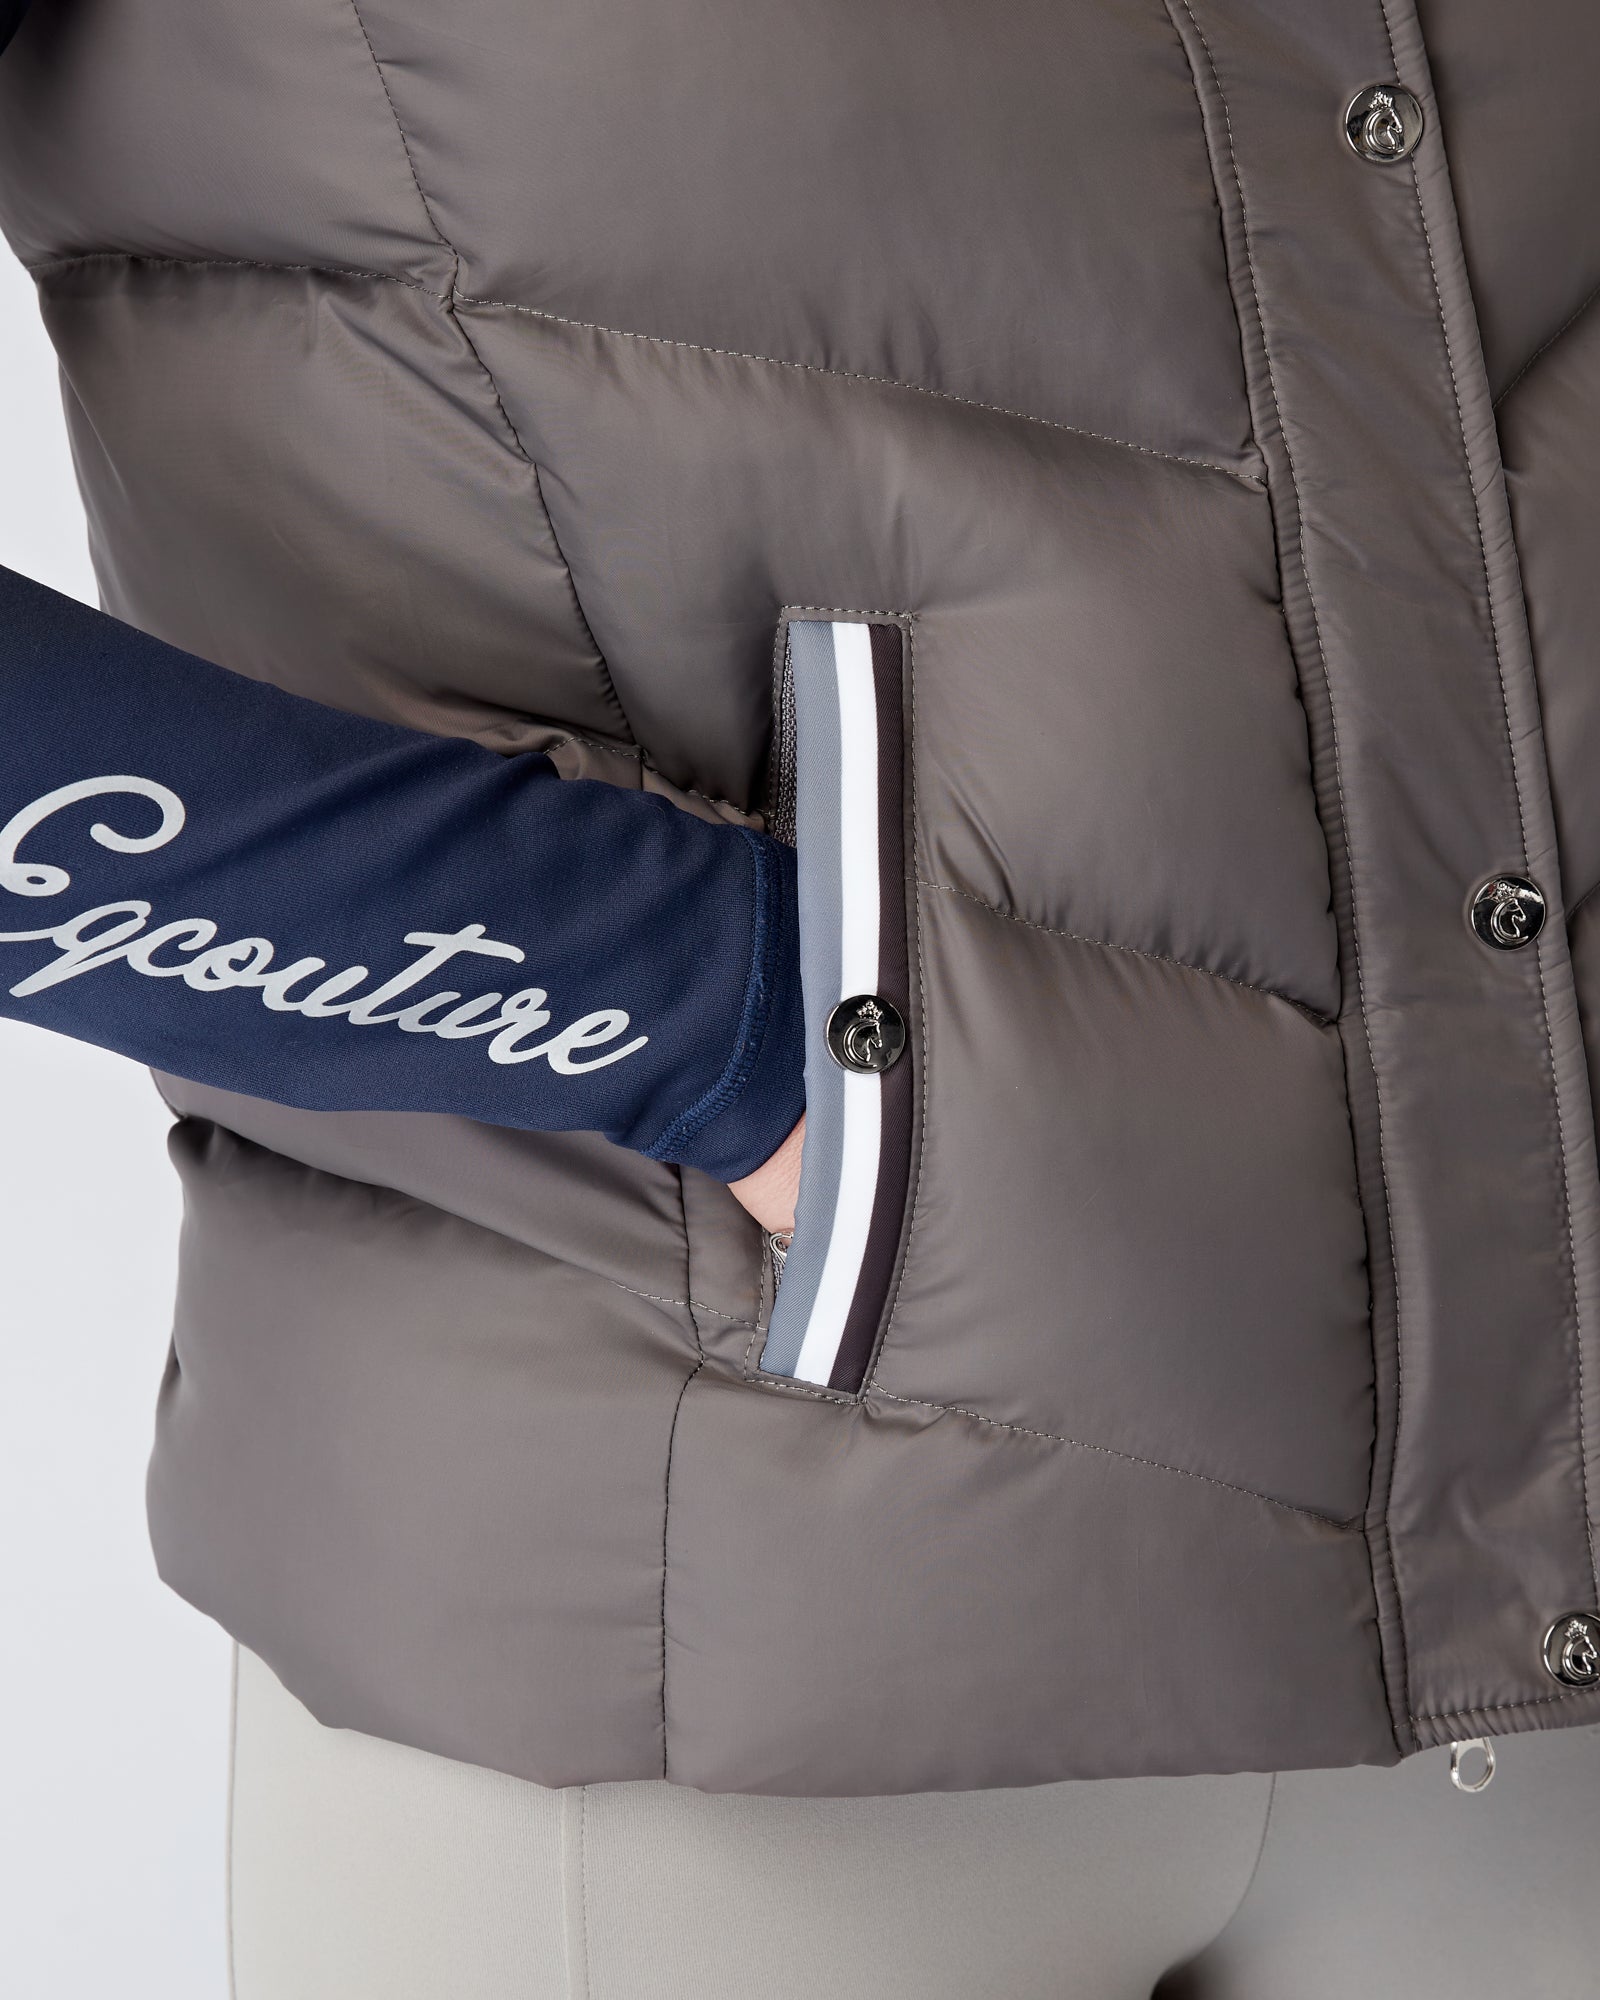 Exclusive Grey Gilet - Detachable Hood